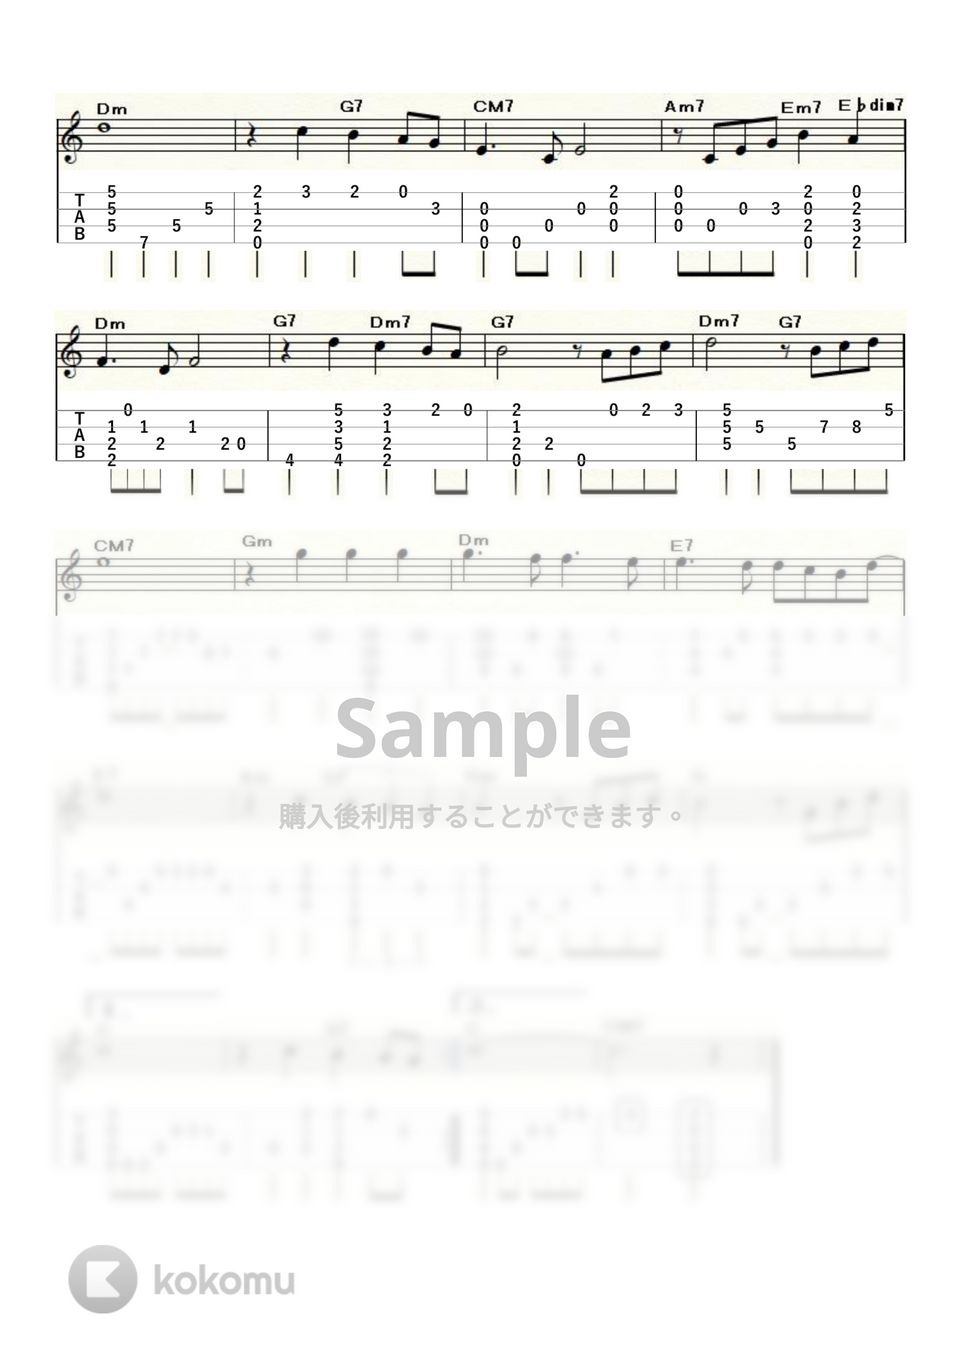 映画「旅情」 - ヴエニスの夏の日 (ｳｸﾚﾚｿﾛ / Low-G / 中級) by ukulelepapa